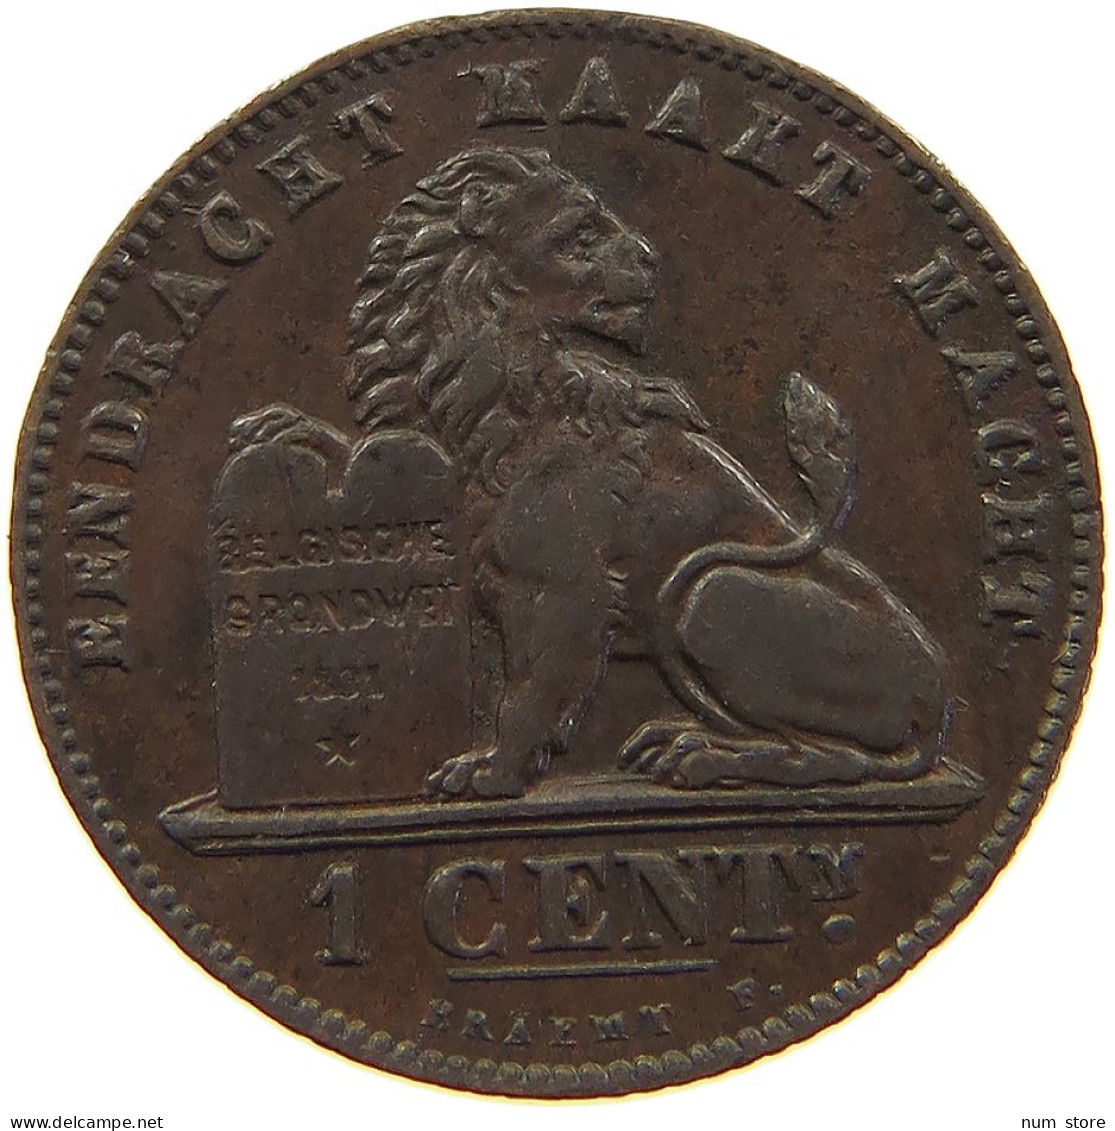 BELGIUM 1 CENTIME 1907 #s009 0215 - 1 Cent